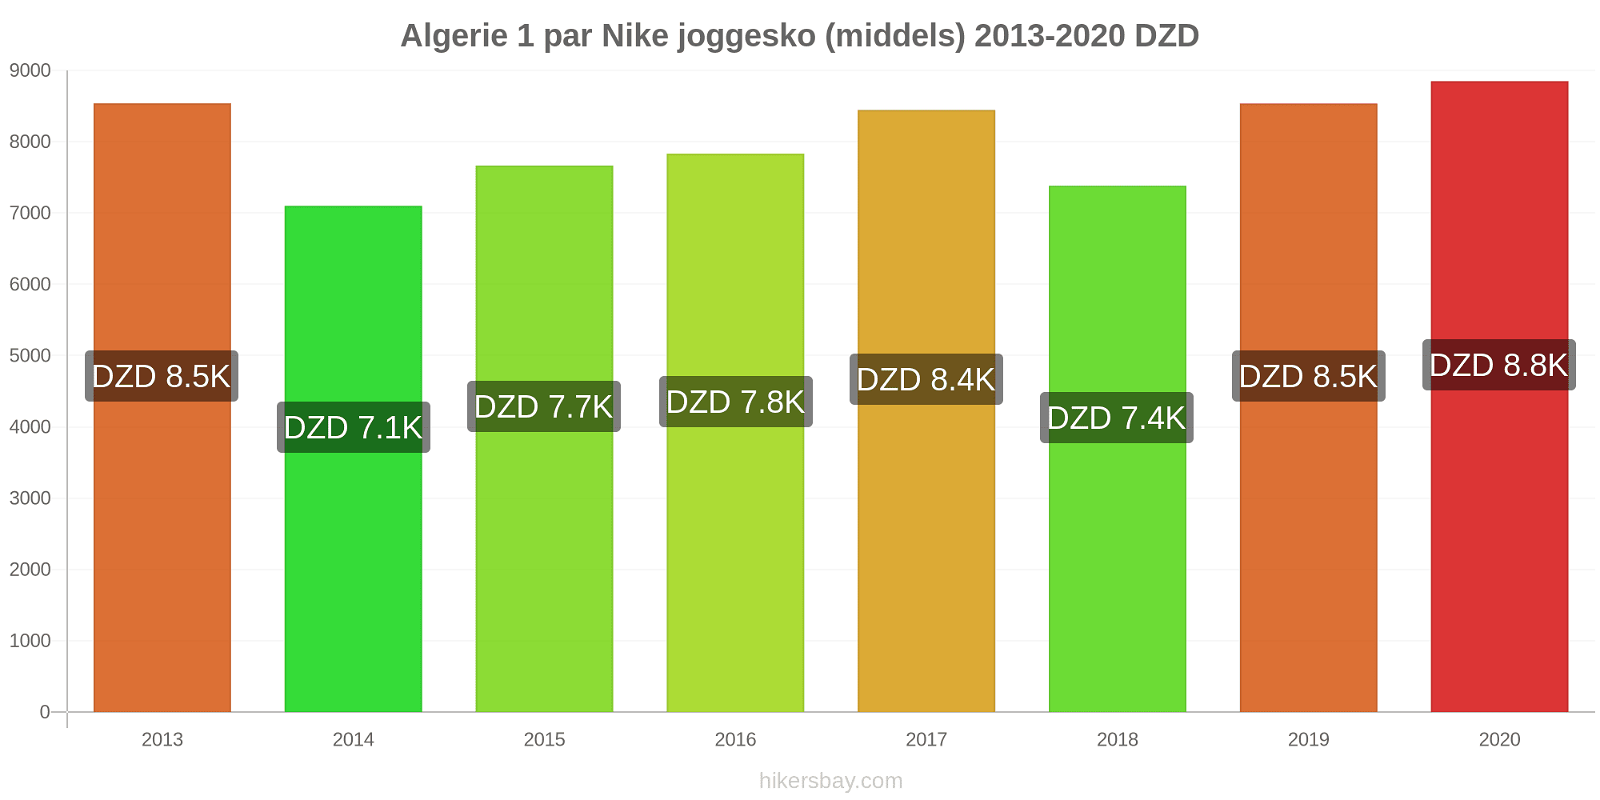 Algerie prisendringer 1 par Nike joggesko (middels) hikersbay.com